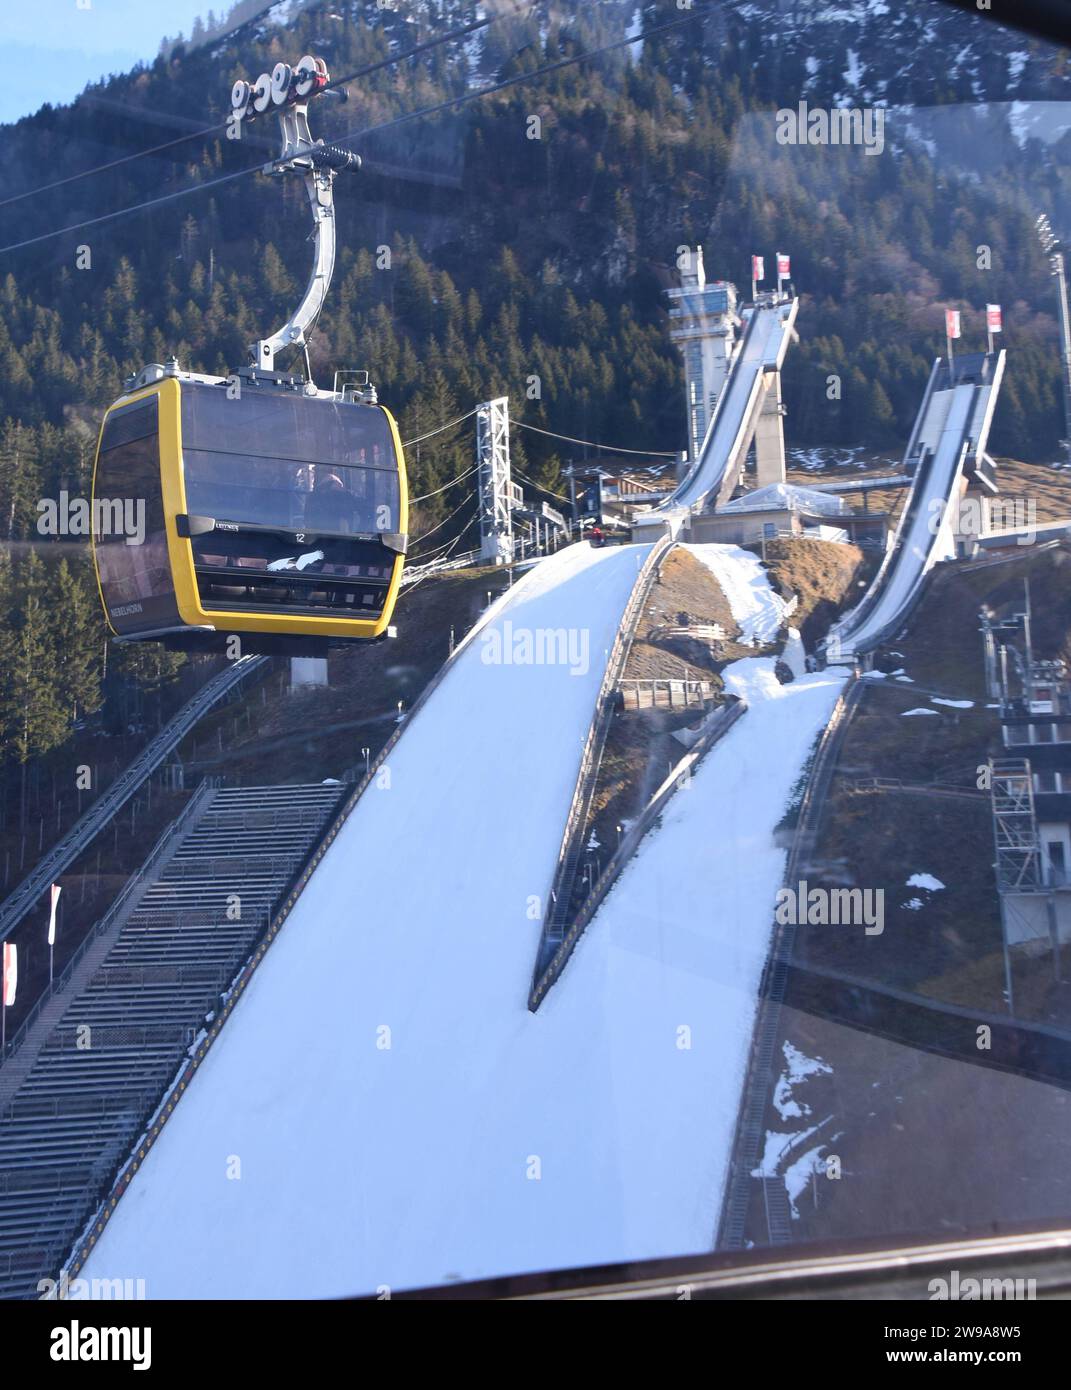 15 Nebelhornbahn Images, Stock Photos, 3D objects, & Vectors